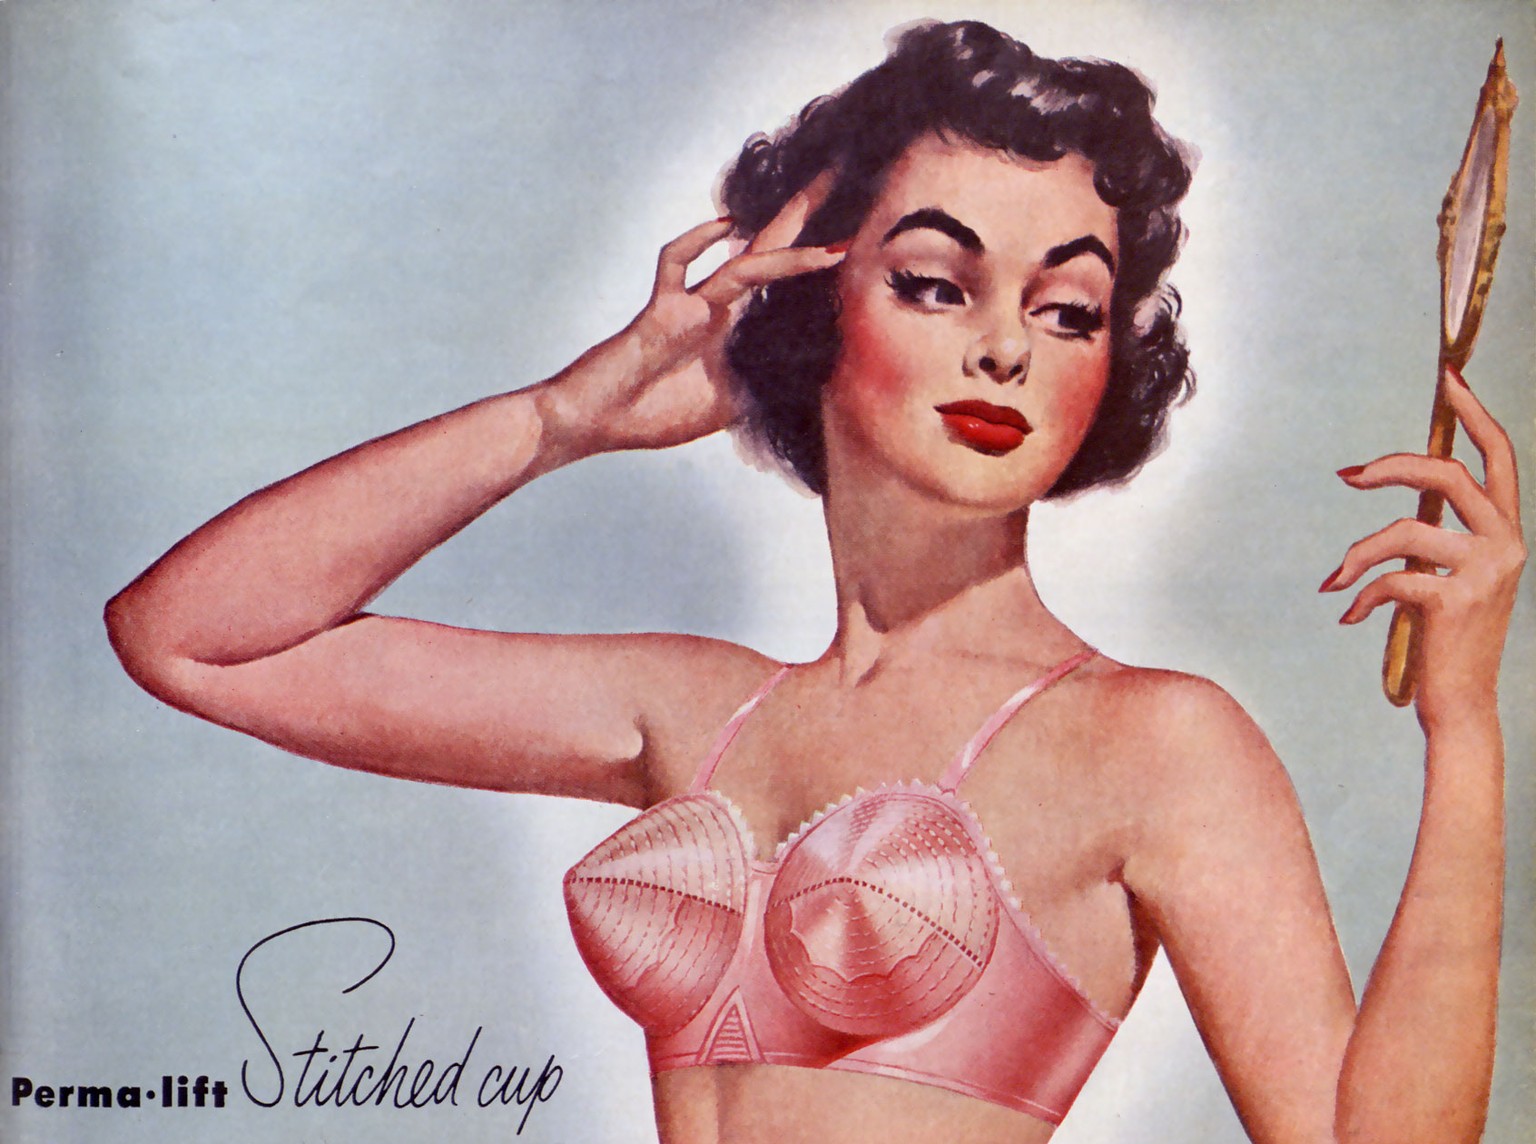 BH-Werbung aus dem Jahr 1951.